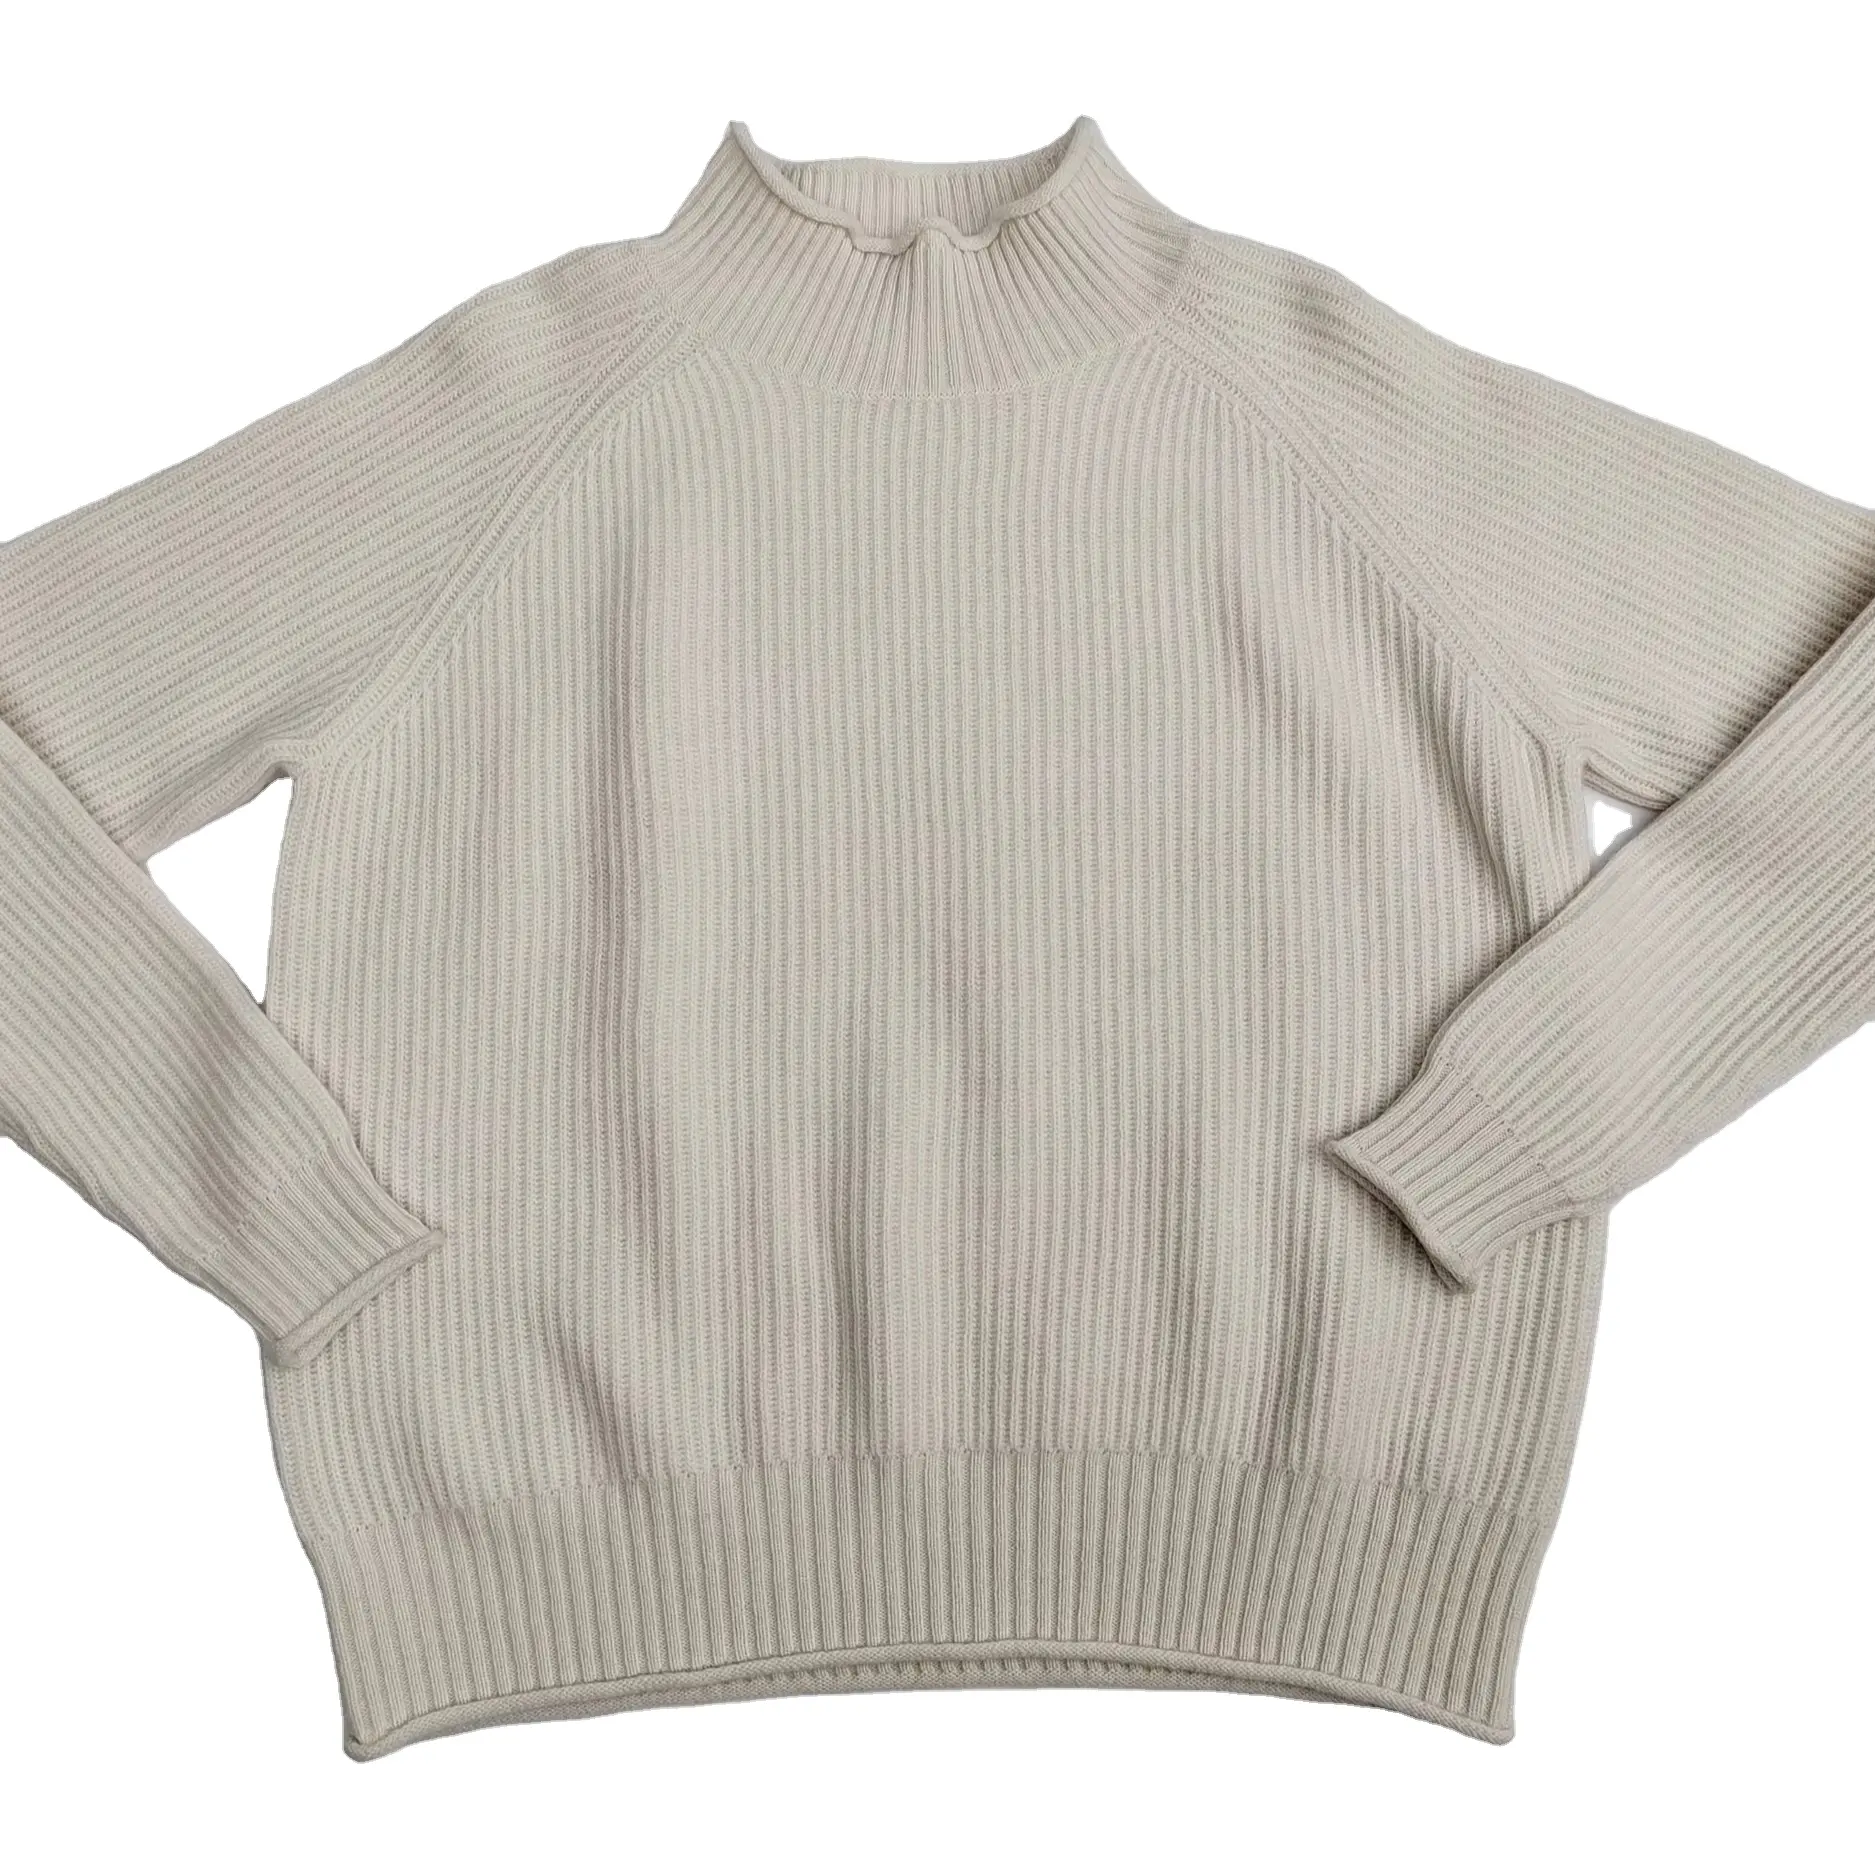 Custom knit Mock Neck Jumper Warm 100% Cashmere Sweater Women